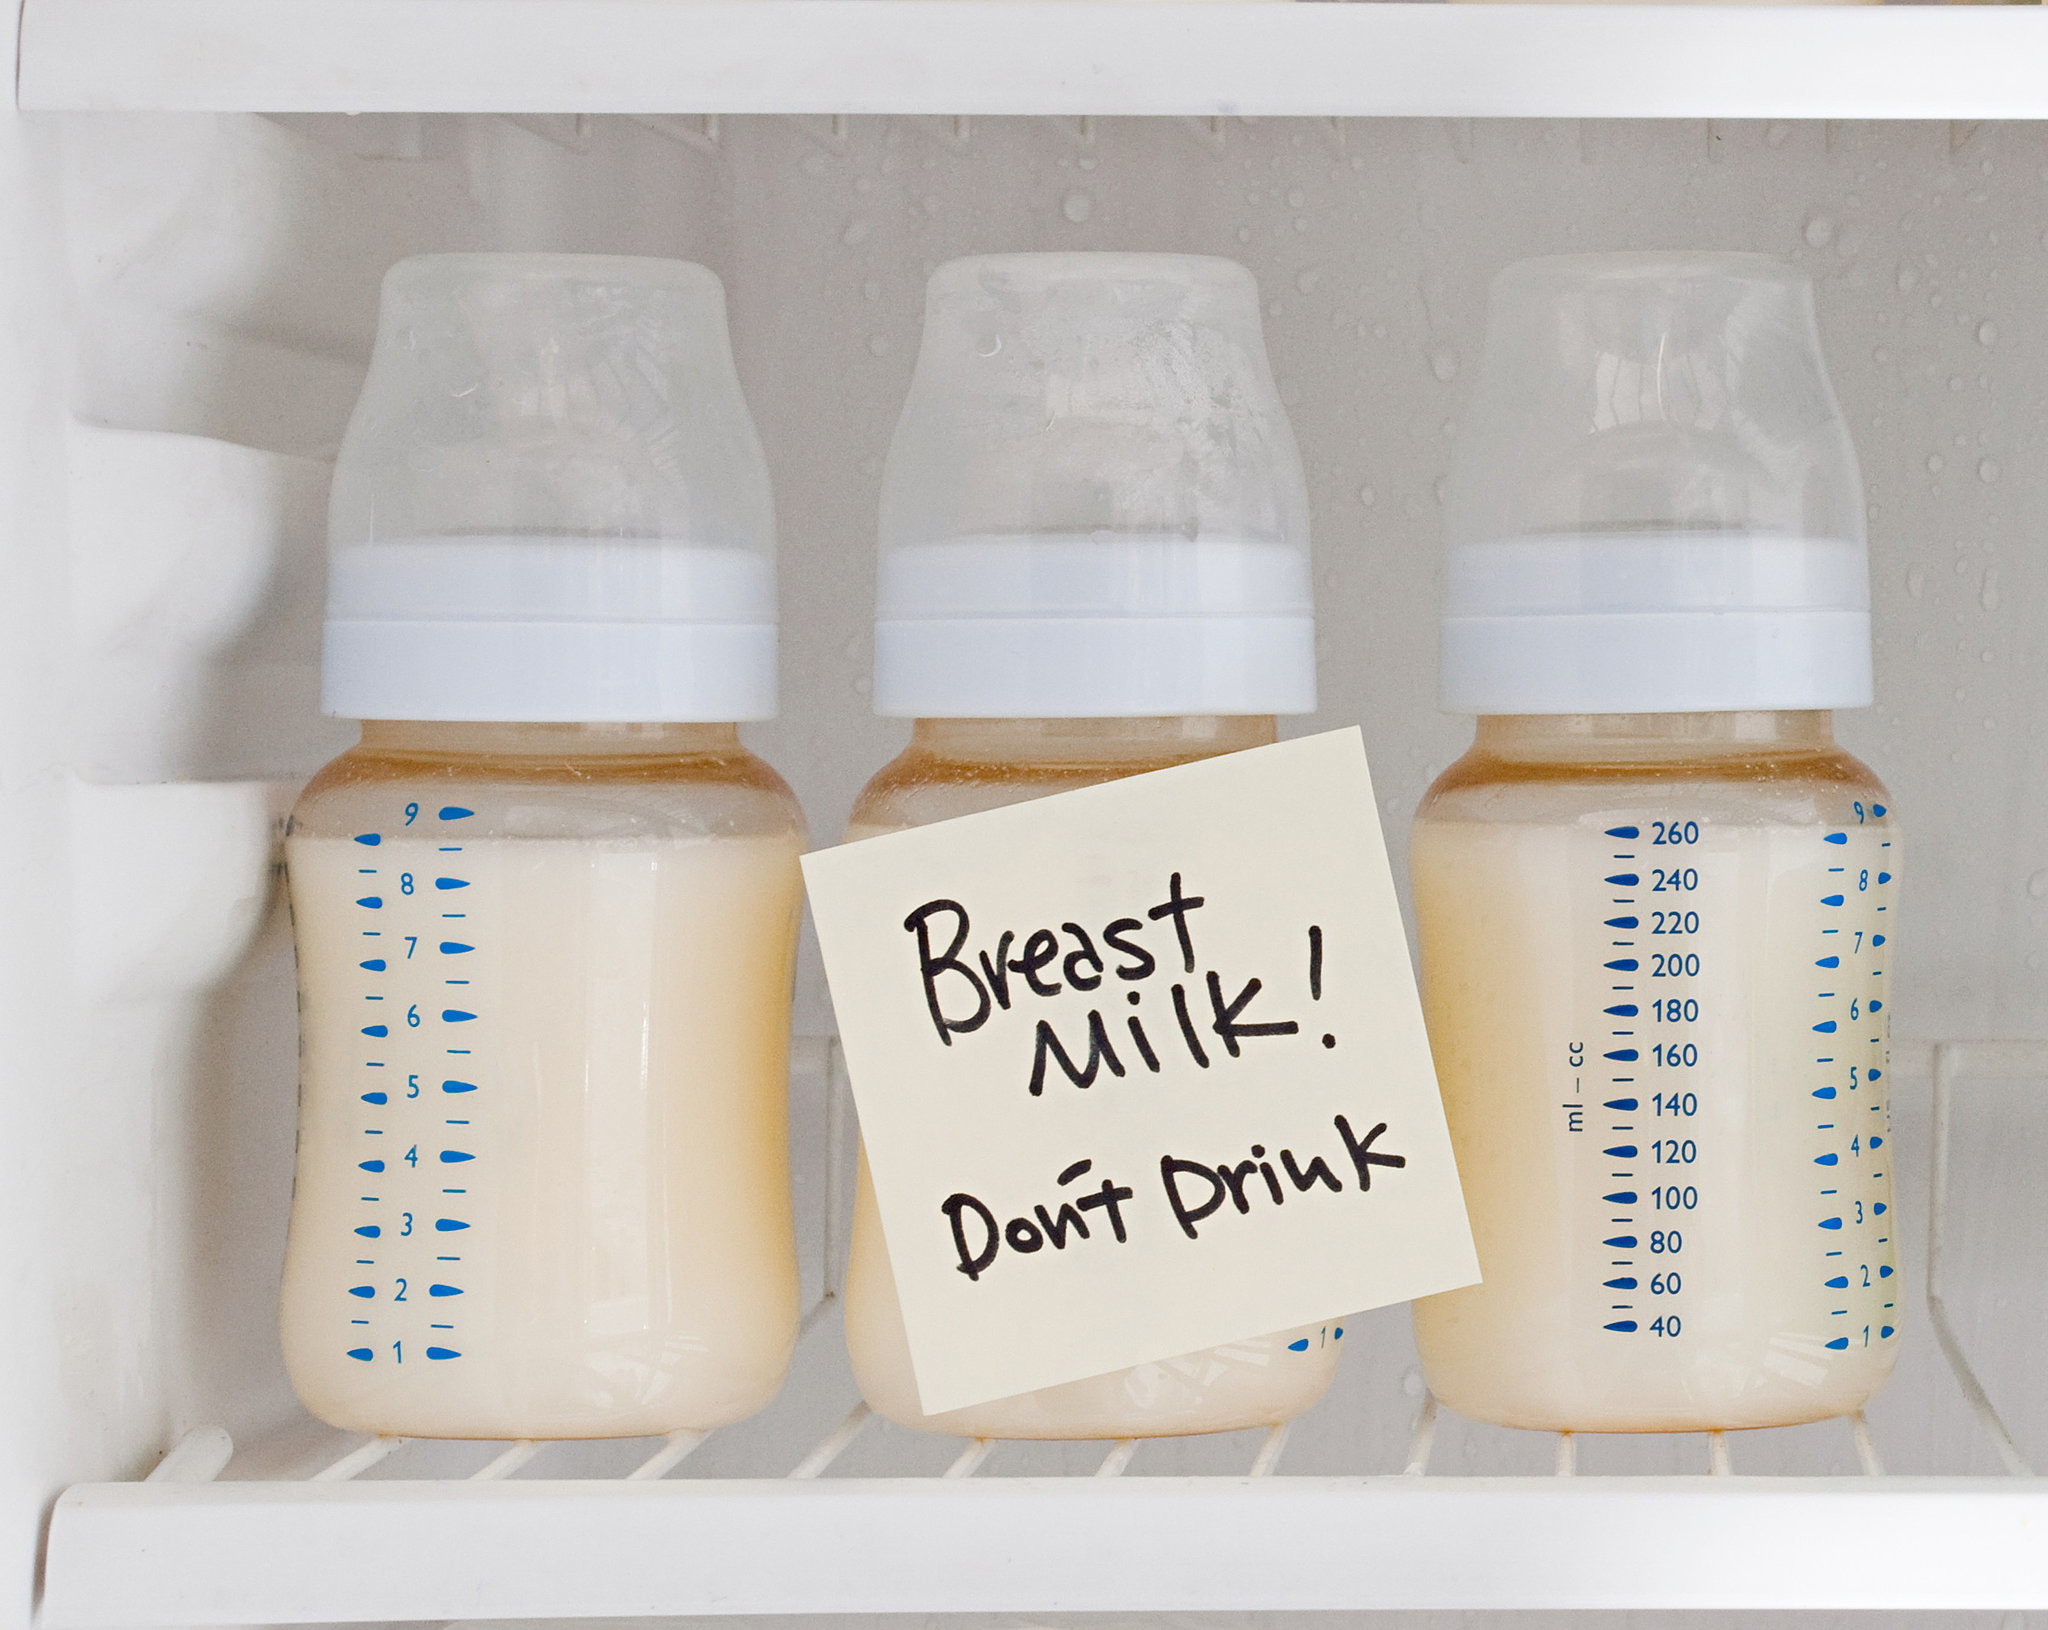 Lượng sữa non lấy được thường rất ít vì cơ thể mẹ chưa kích thích tiết nhiều sữa